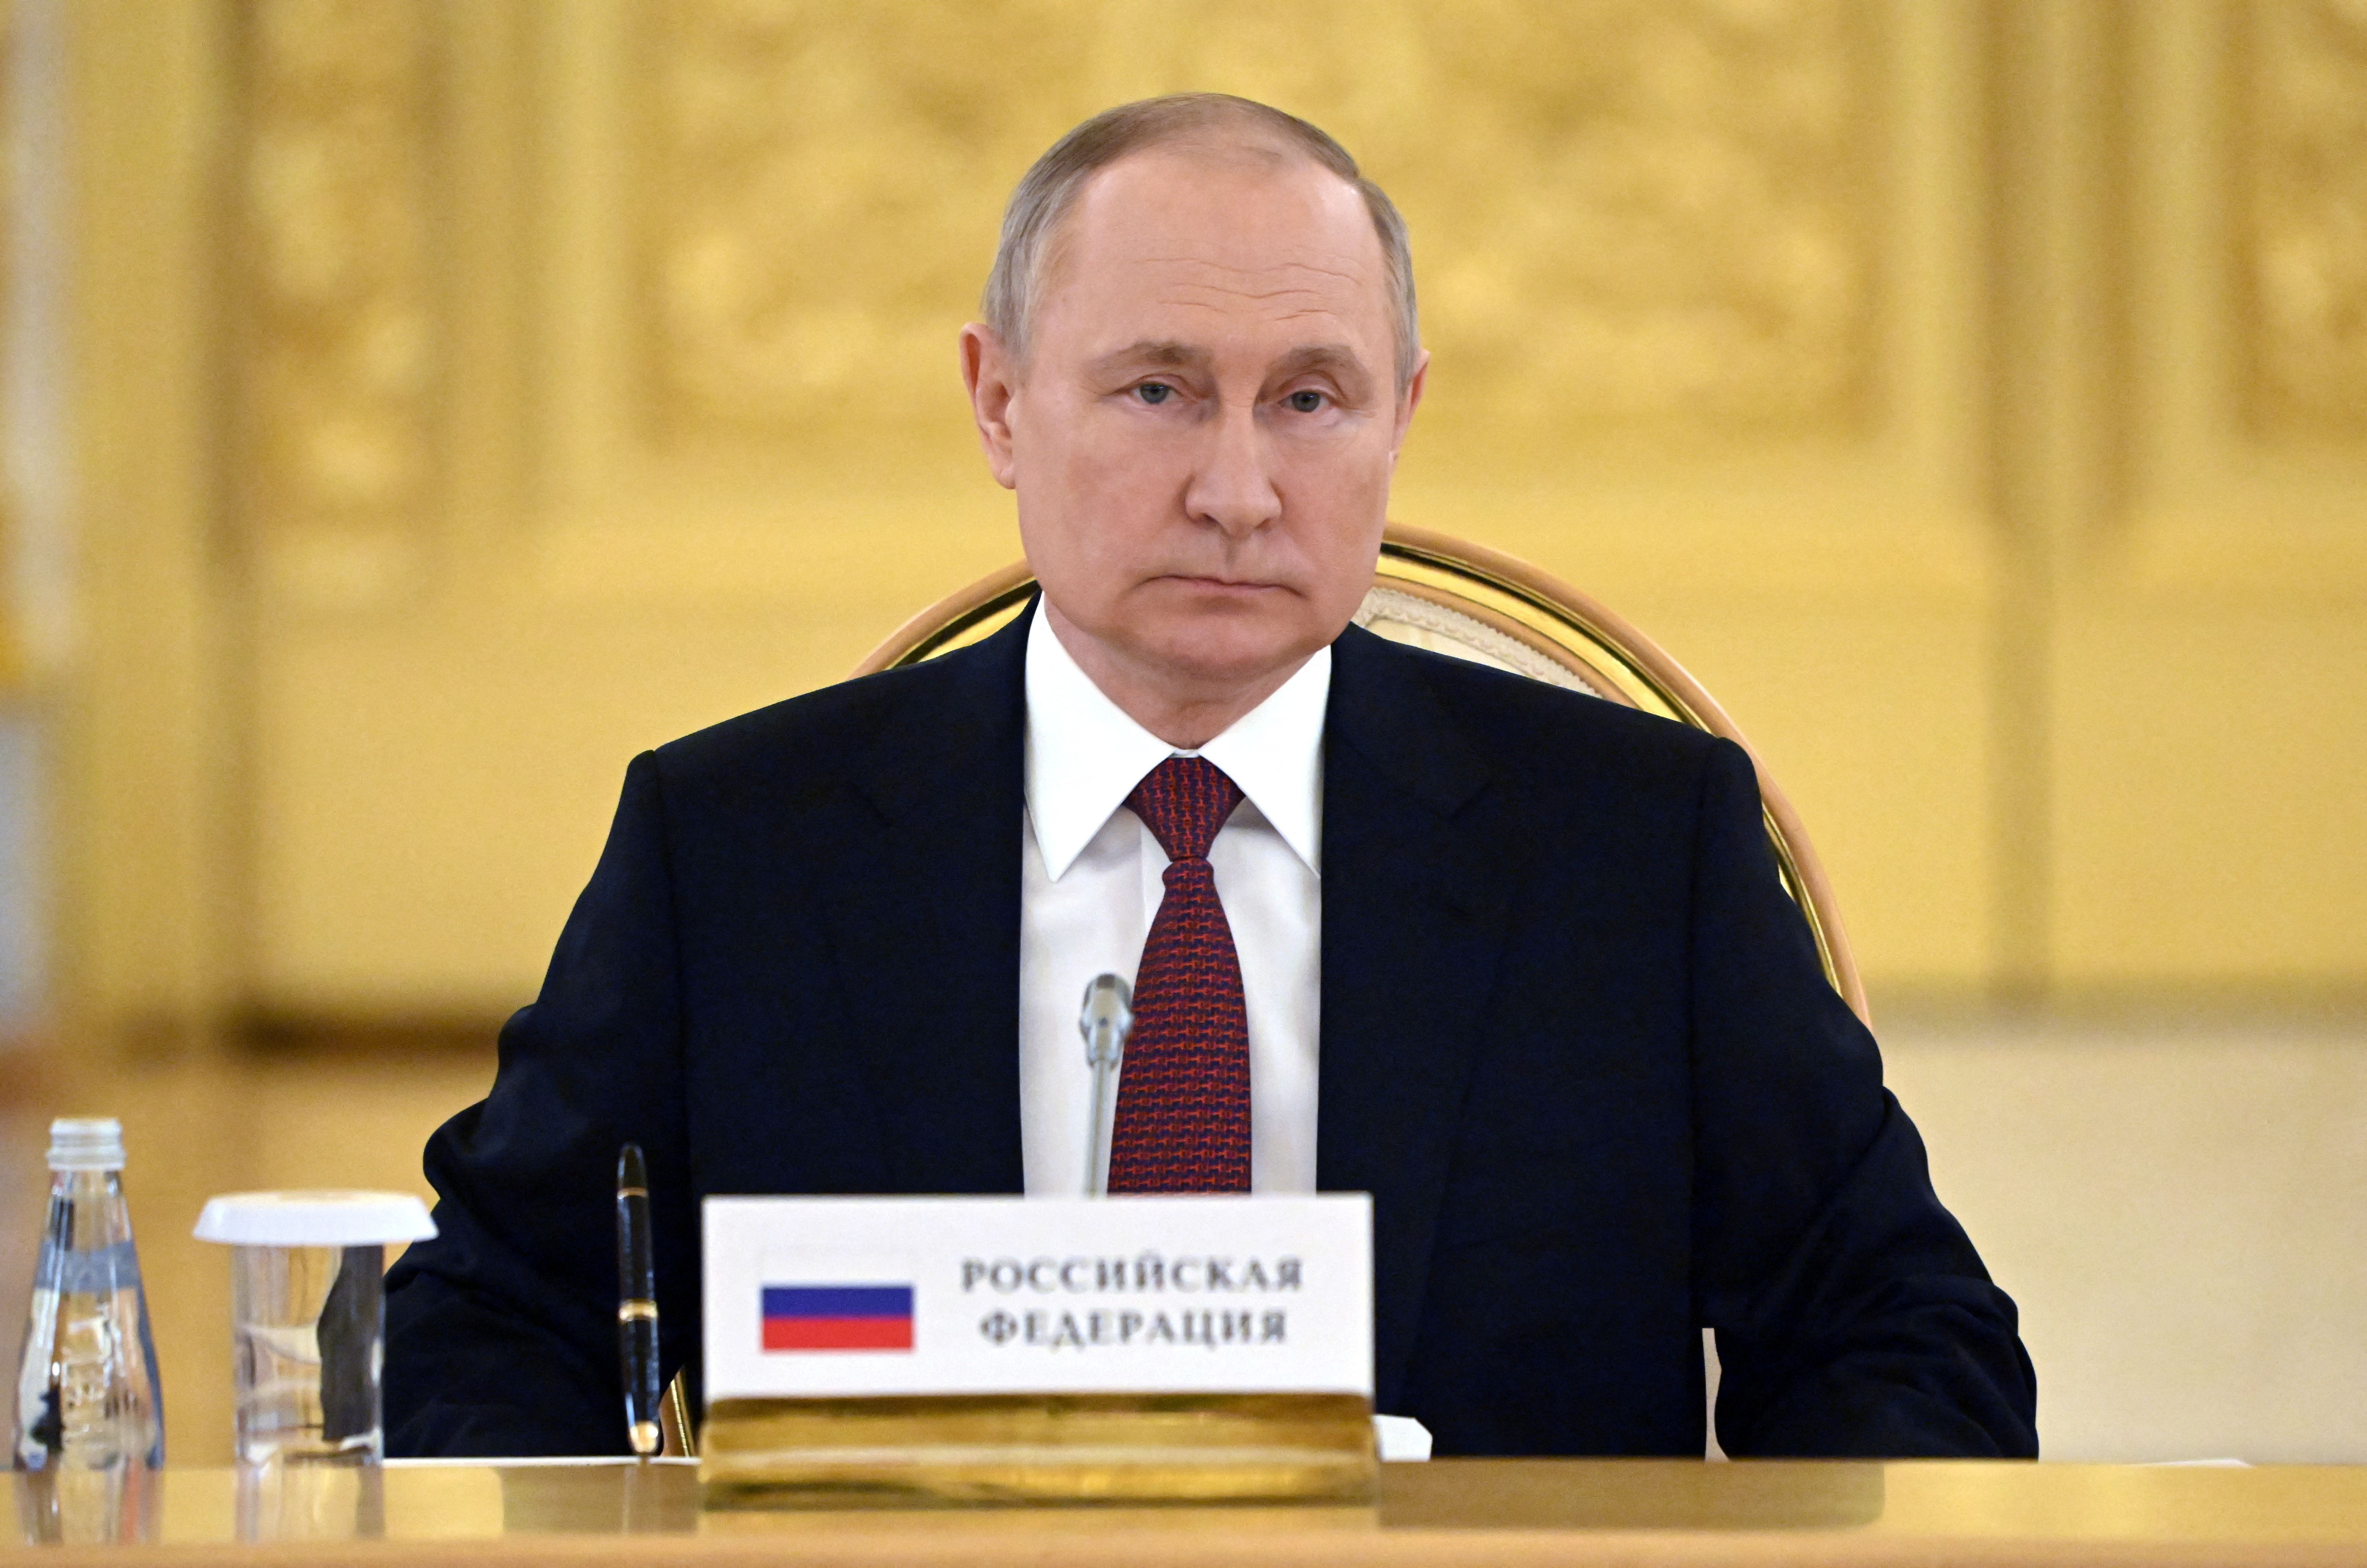 Vladimir Putin suspendió a dos generales rusos por el fracaso militar en Ucrania (Sputnik/Sergei Guneev/Pool via REUTERS)